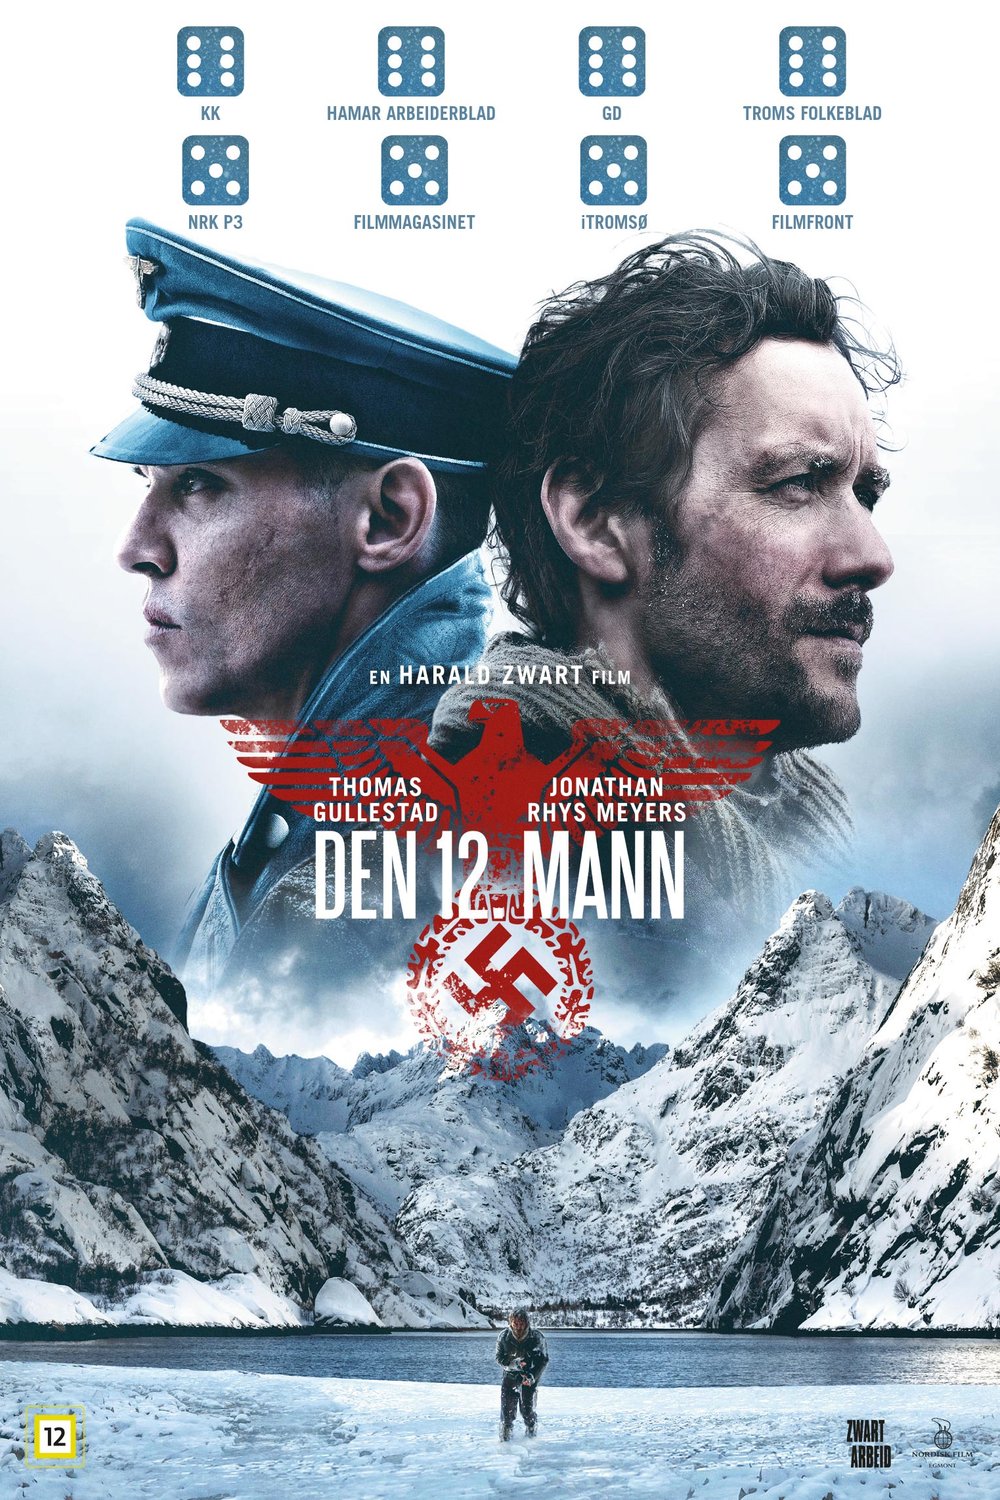 L'affiche originale du film The 12th man en norvégien